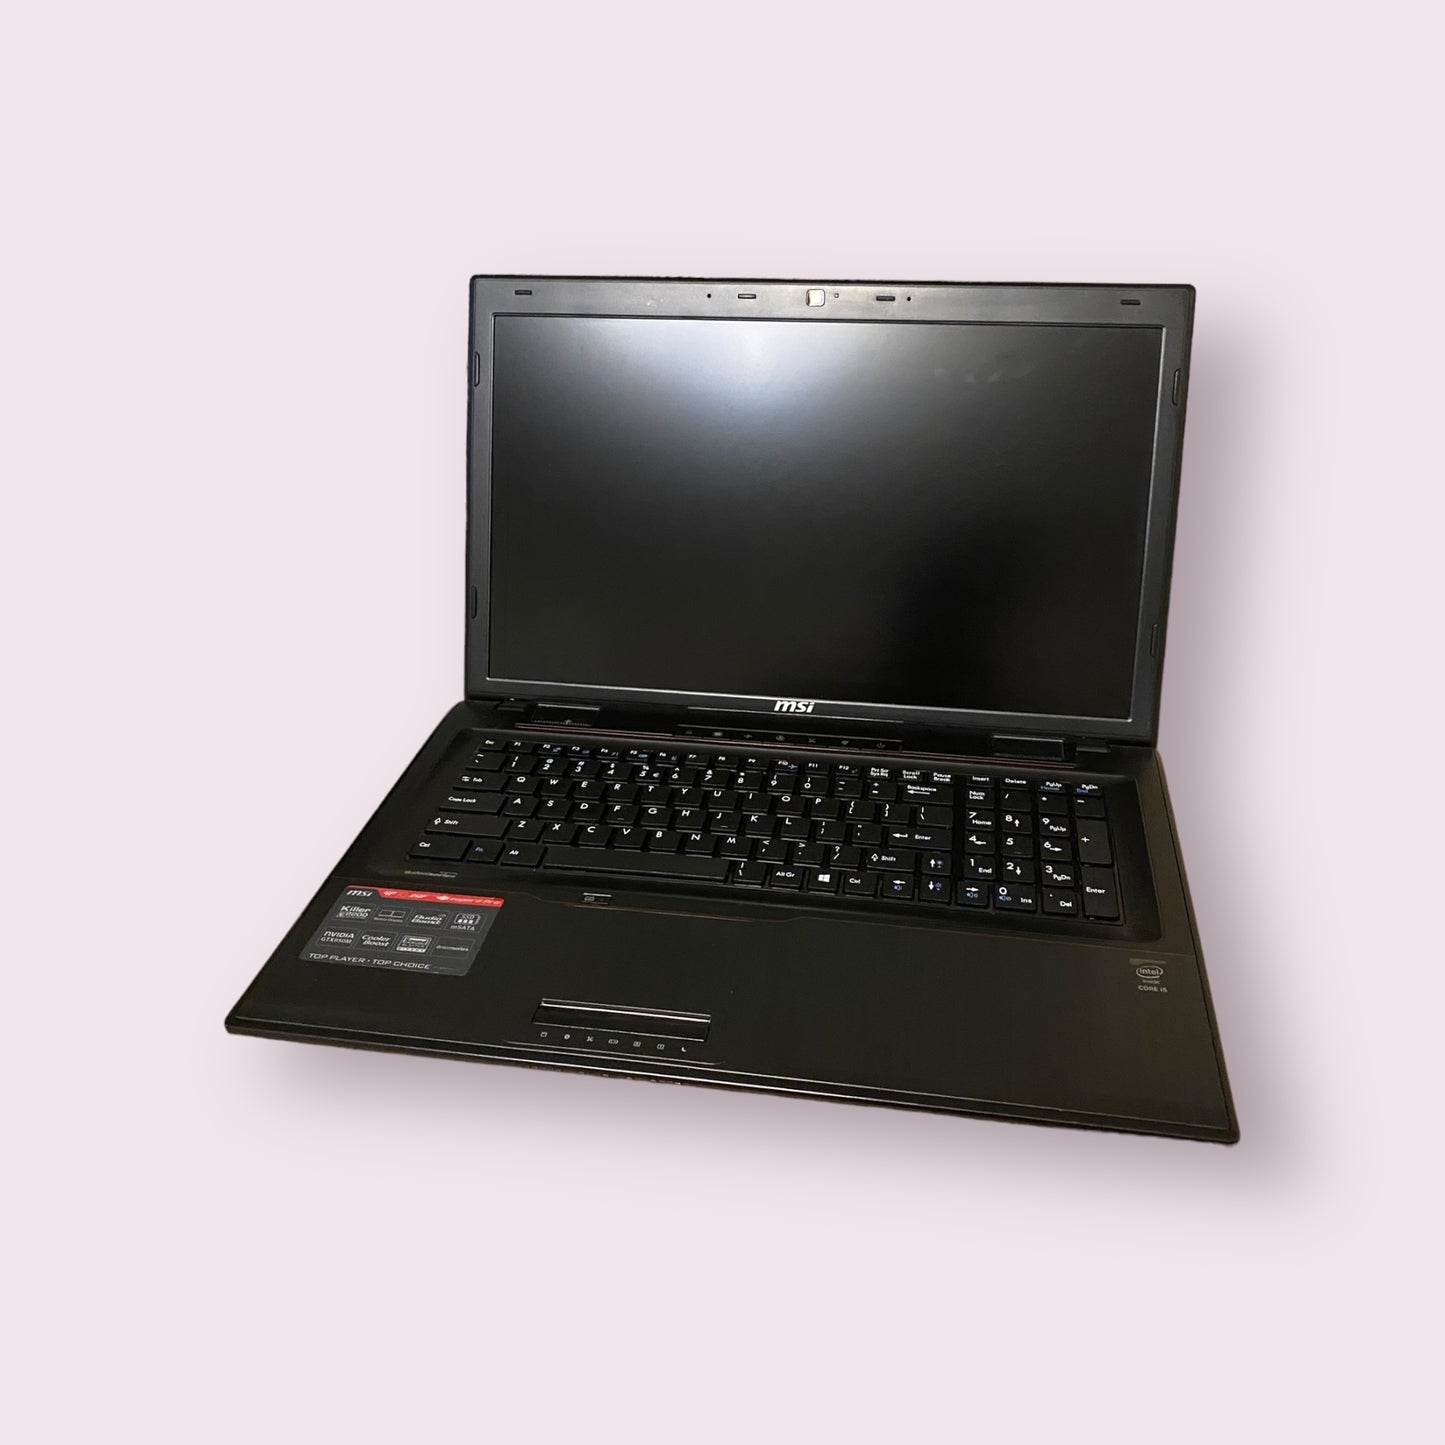 MSI Leopard Pro GP70 2QF 17" Windows 10 Laptop Intel I5 4th Gen 2.9GHz, 500GB SSD 8GB Ram GTX950M- Grade B